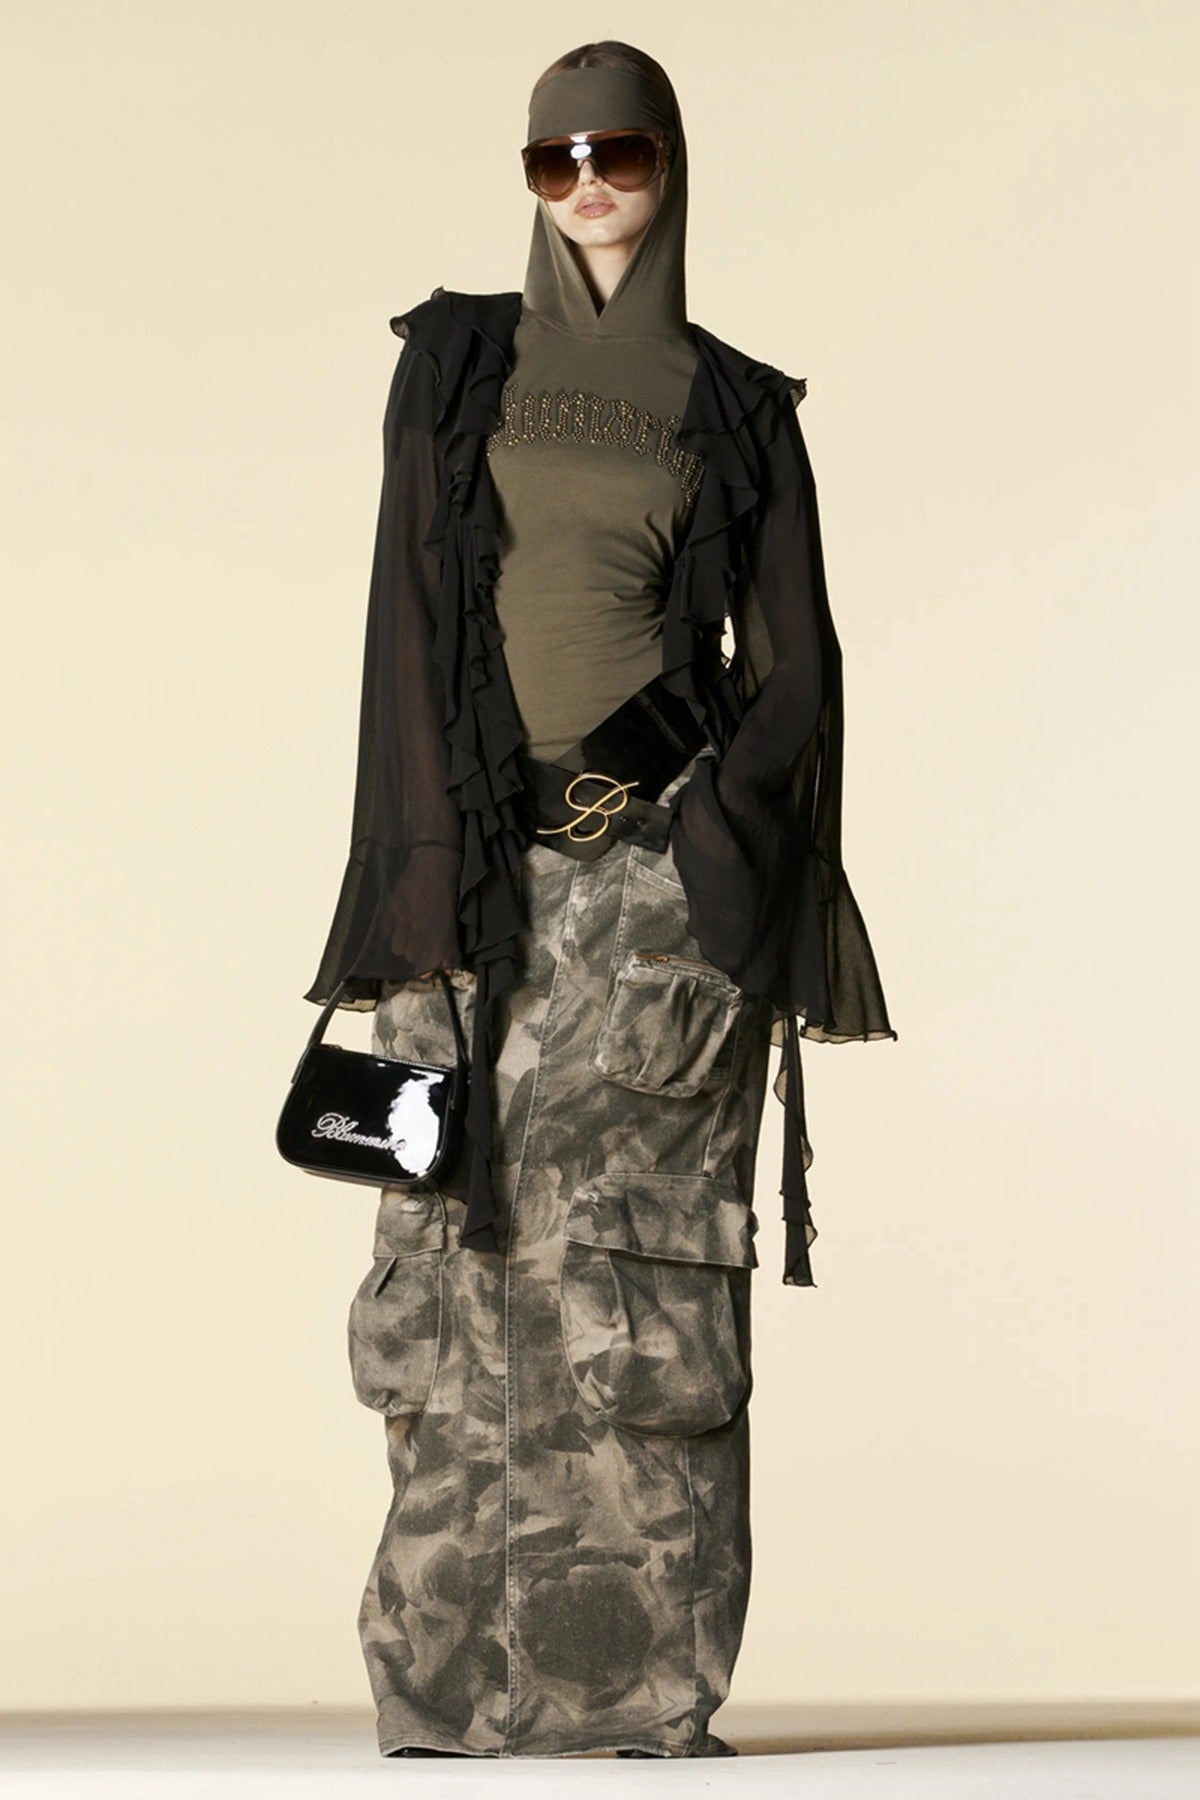 Functional Long Denim Skirt: Khaki Green Camouflage, Multiple Pockets, Straight Tube, Ideal for Work